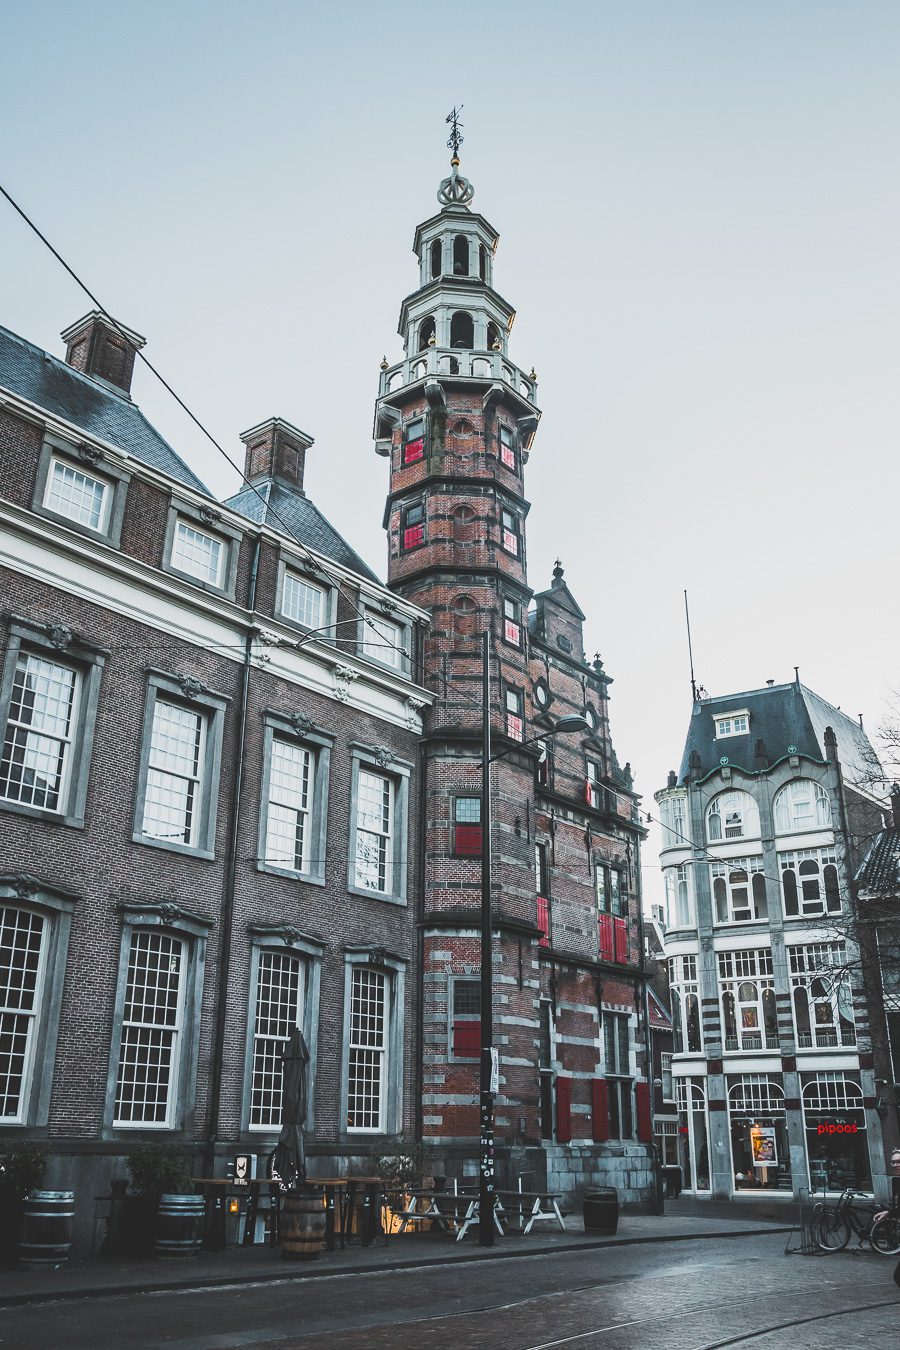 La Haye est une belle ville historique située aux Pays-Bas le long de la mer du Nord. Avec son architecture, ses musées incroyables et sa scène culturelle dynamique, c'est l'une des destinations les plus excitantes d'Europe pour les voyageurs. Que vous recherchiez une escapade romantique ou une expérience, La Haye est sûre de laisser une impression. Avec ses canaux époustouflants, ses parcs époustouflants et sa vie nocturne animée, il y en a pour tous les goûts dans cette ville animée.